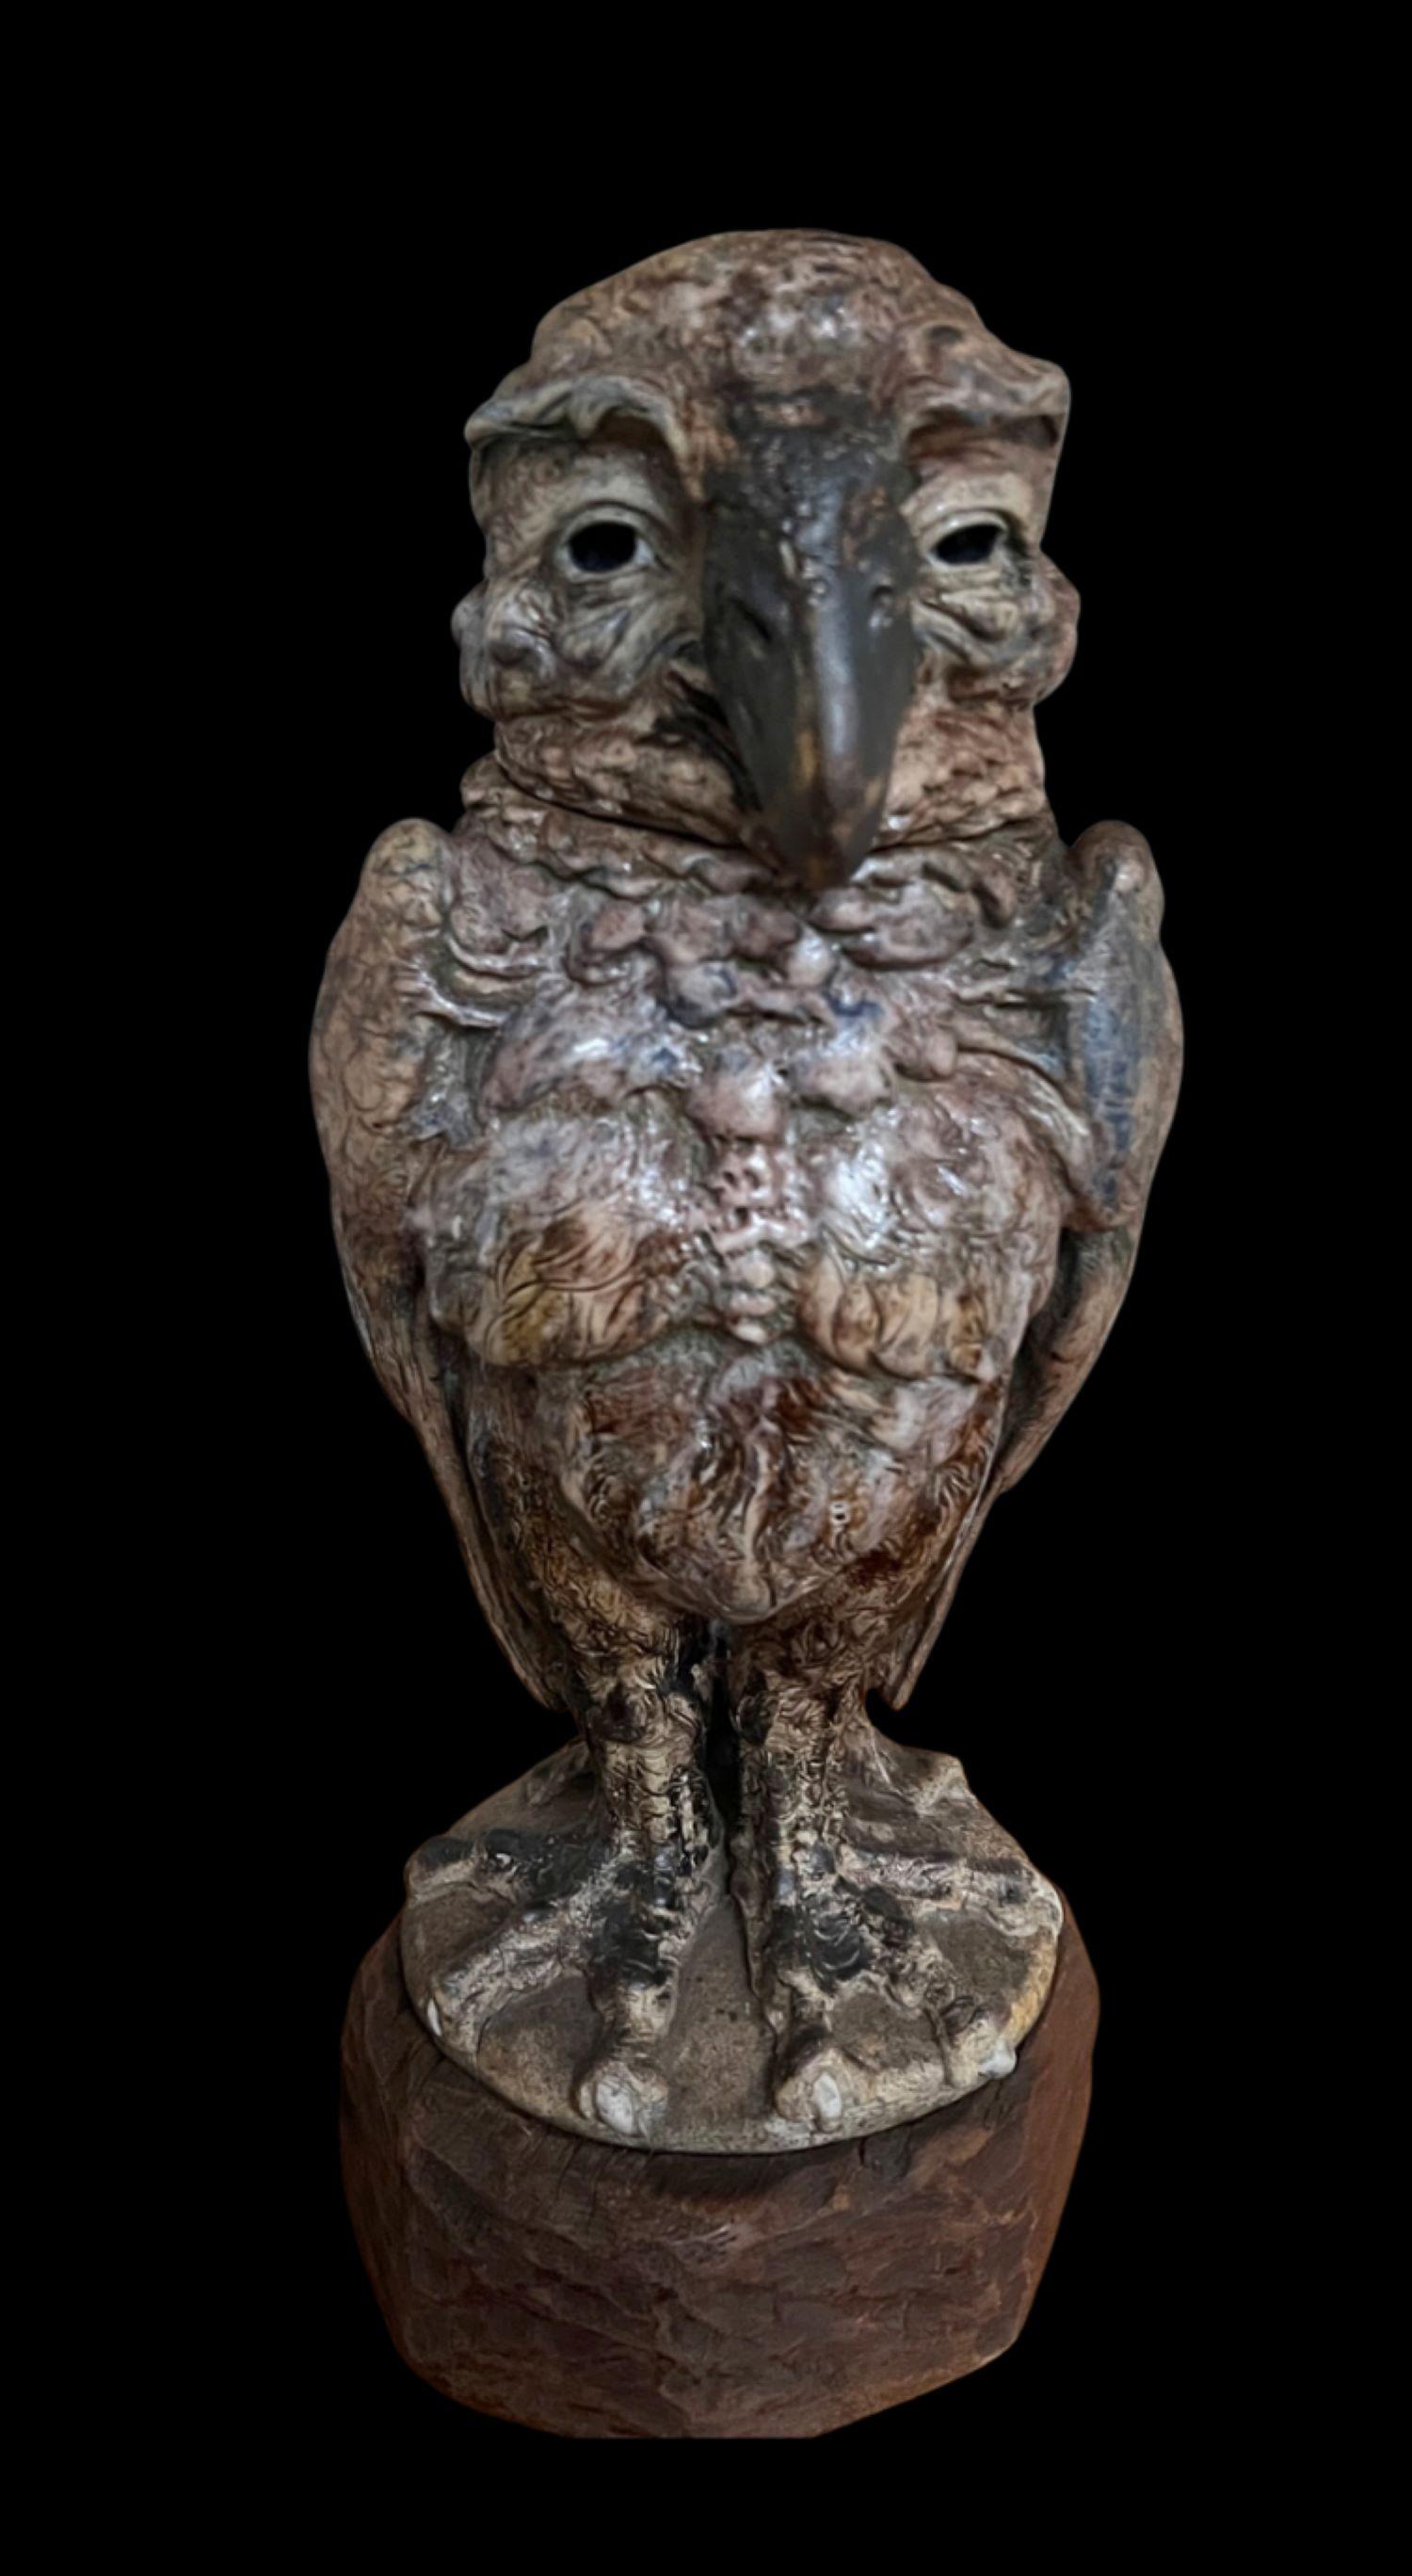 5232

Grand oiseau des frères Martin par Robert Wallace Martin.

Un exemple bien modelé avec une expression docile.

Daté de 1912 et mesurant 24 cm de haut

Fissure de cuisson à la base.